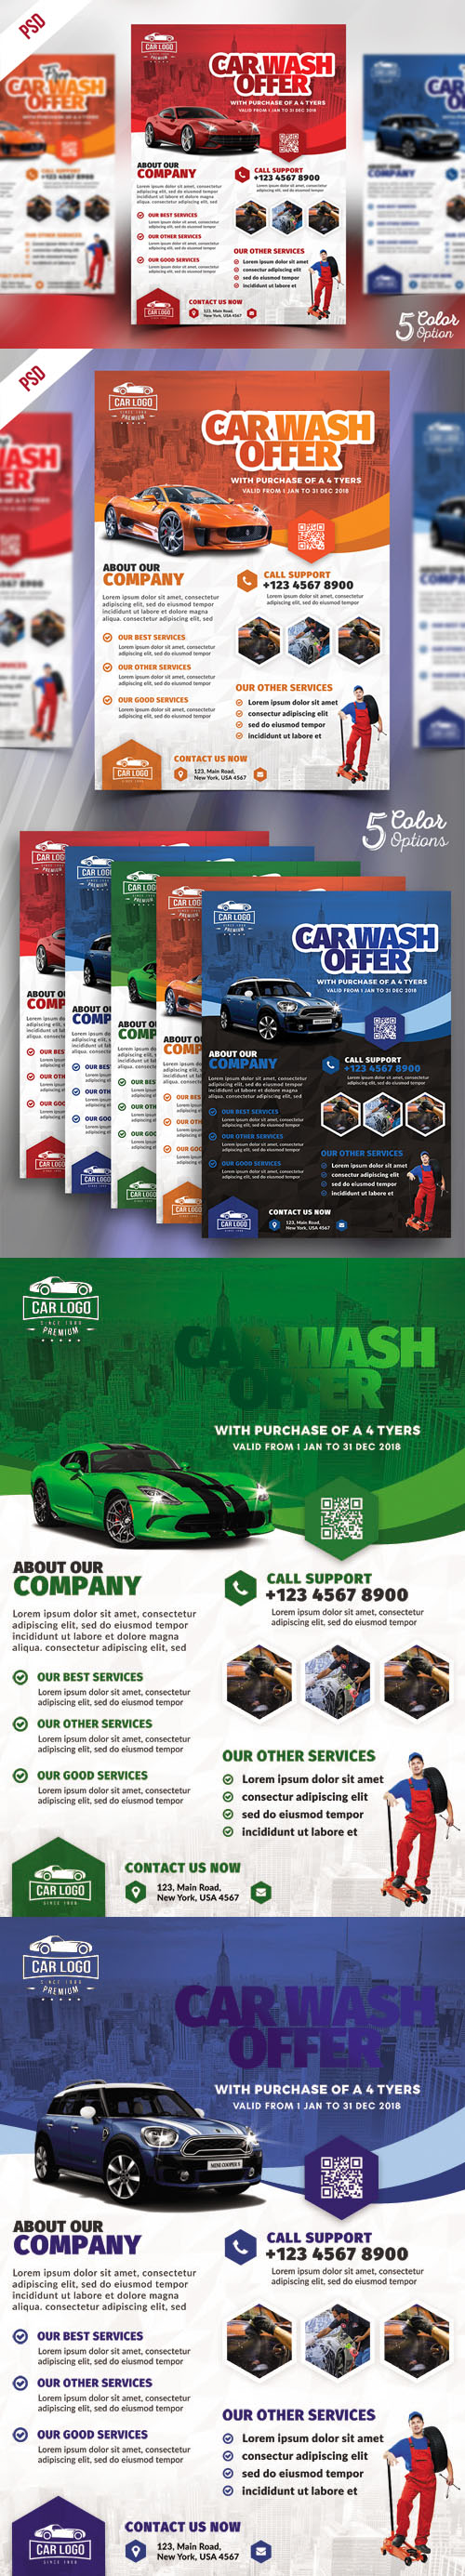 Car Wash Services Promotional Flyer PSD Bundle